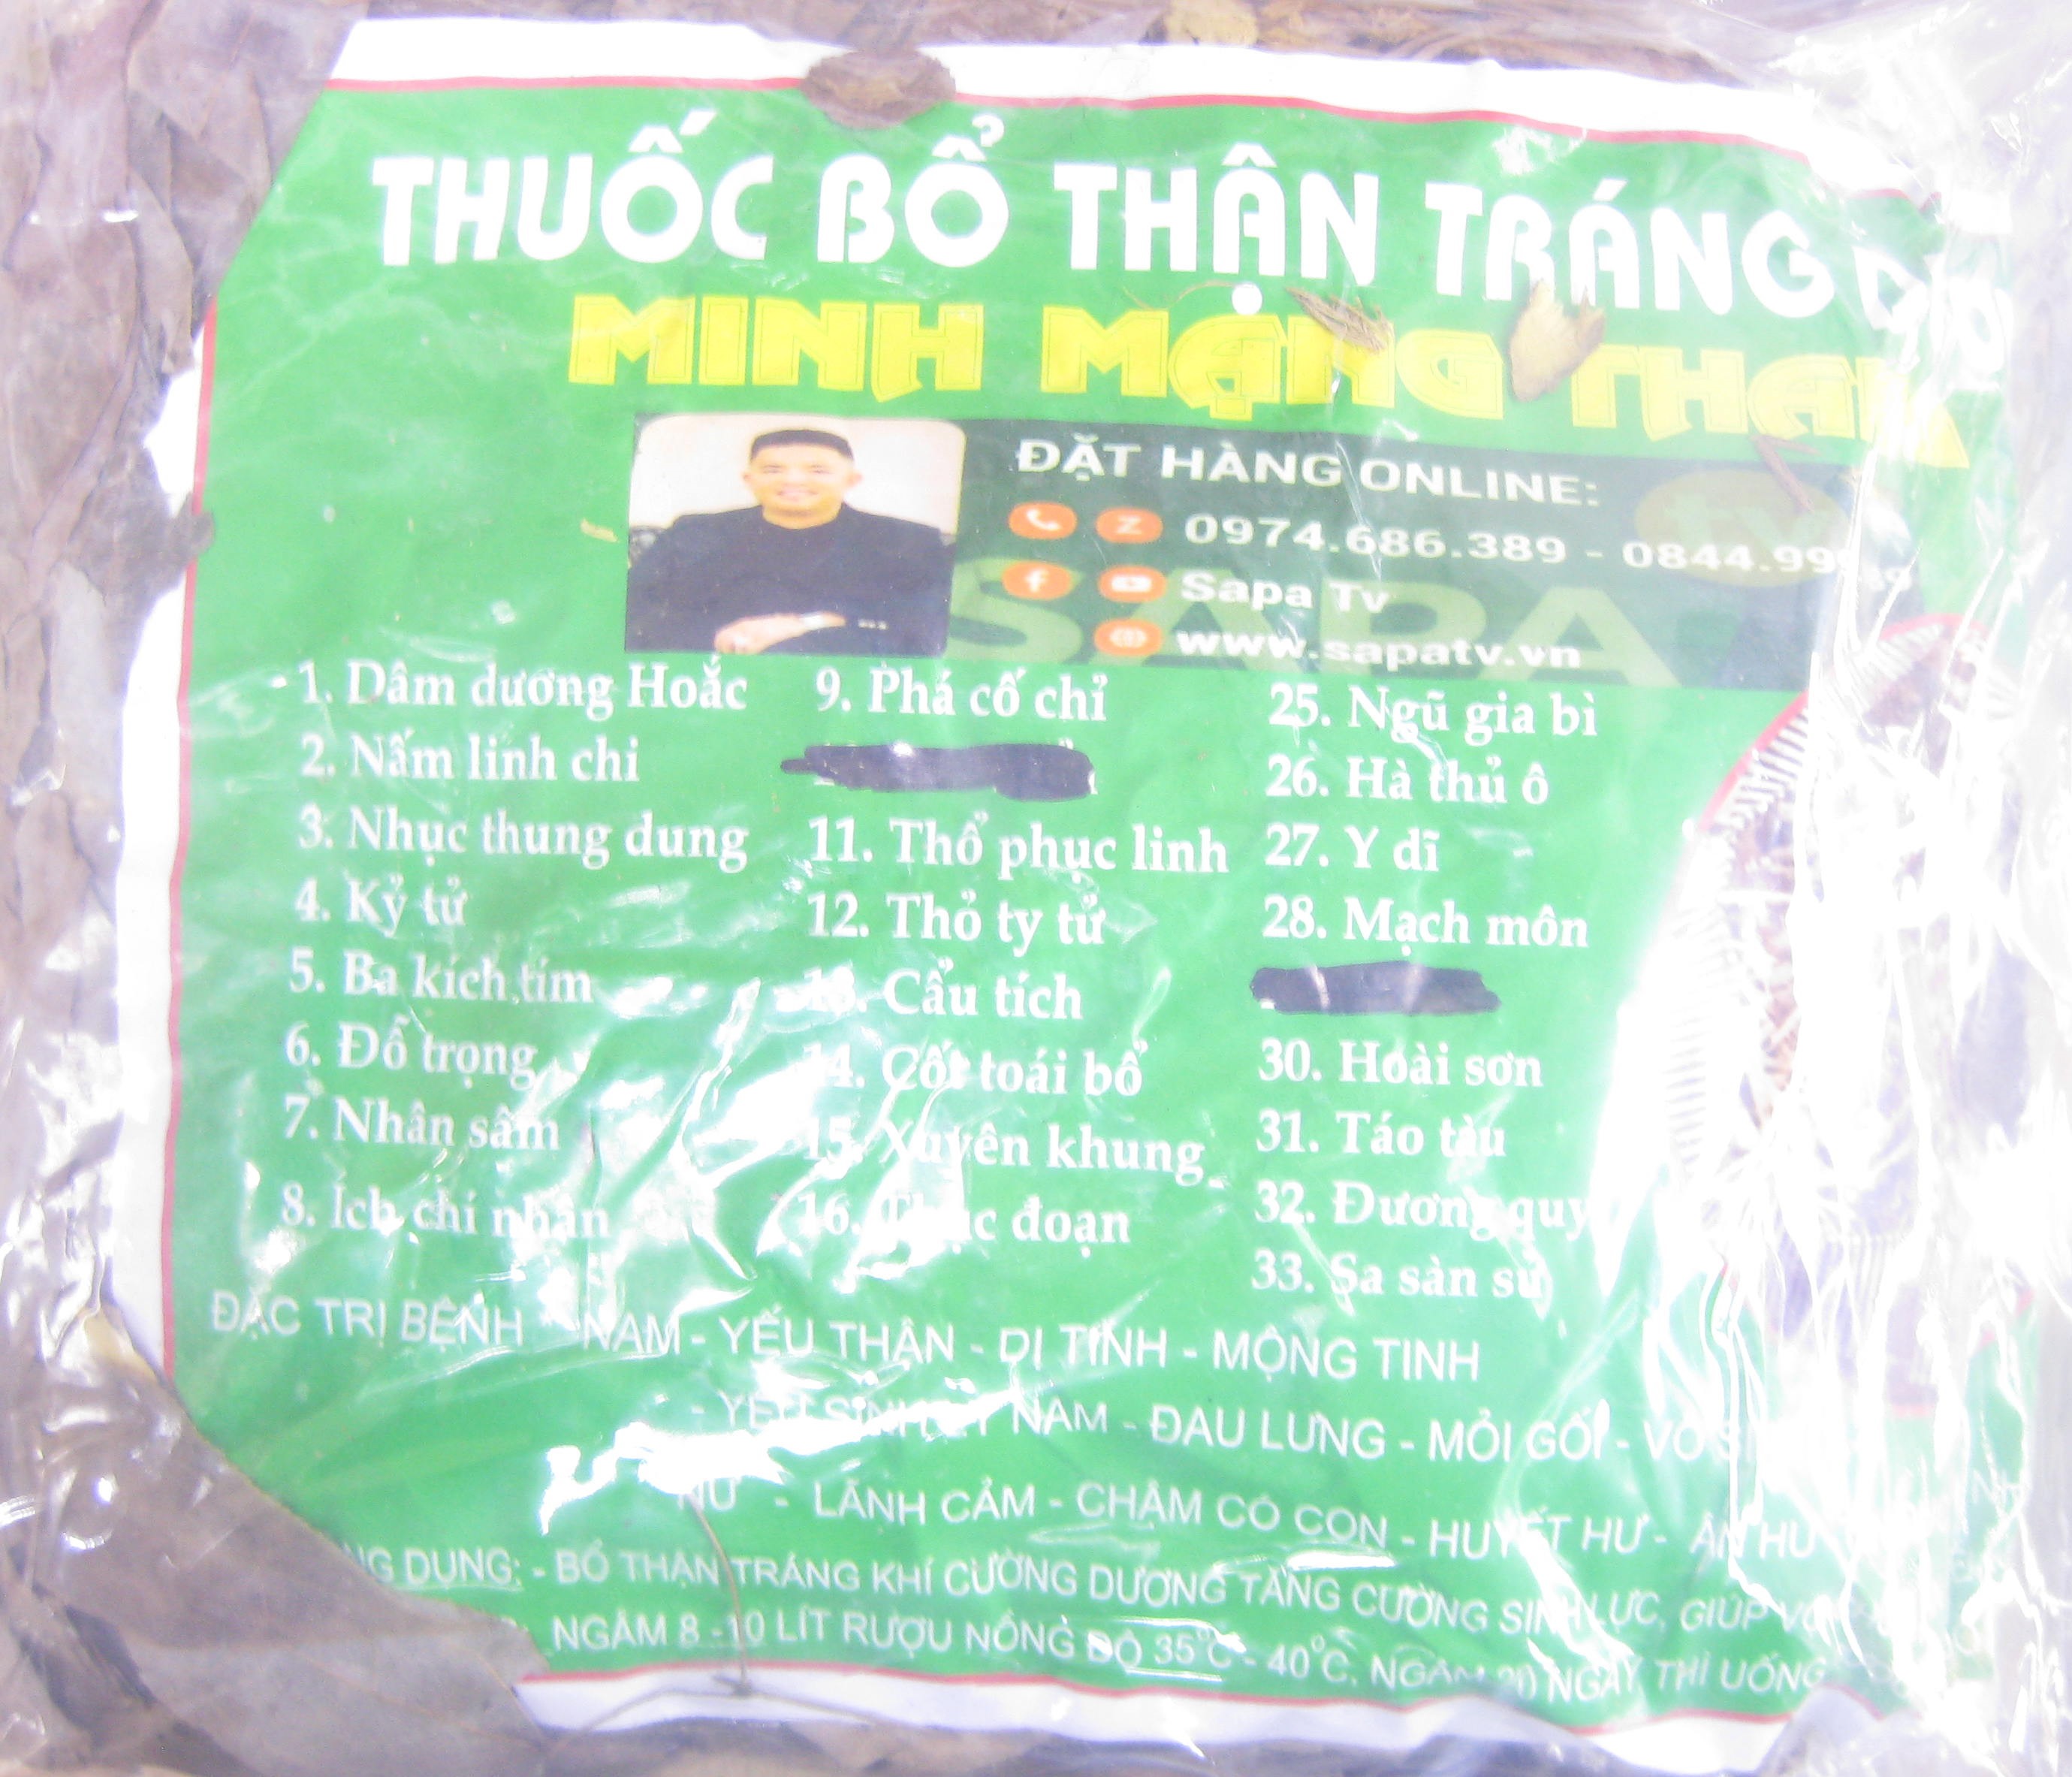 Minh Mạng Thang